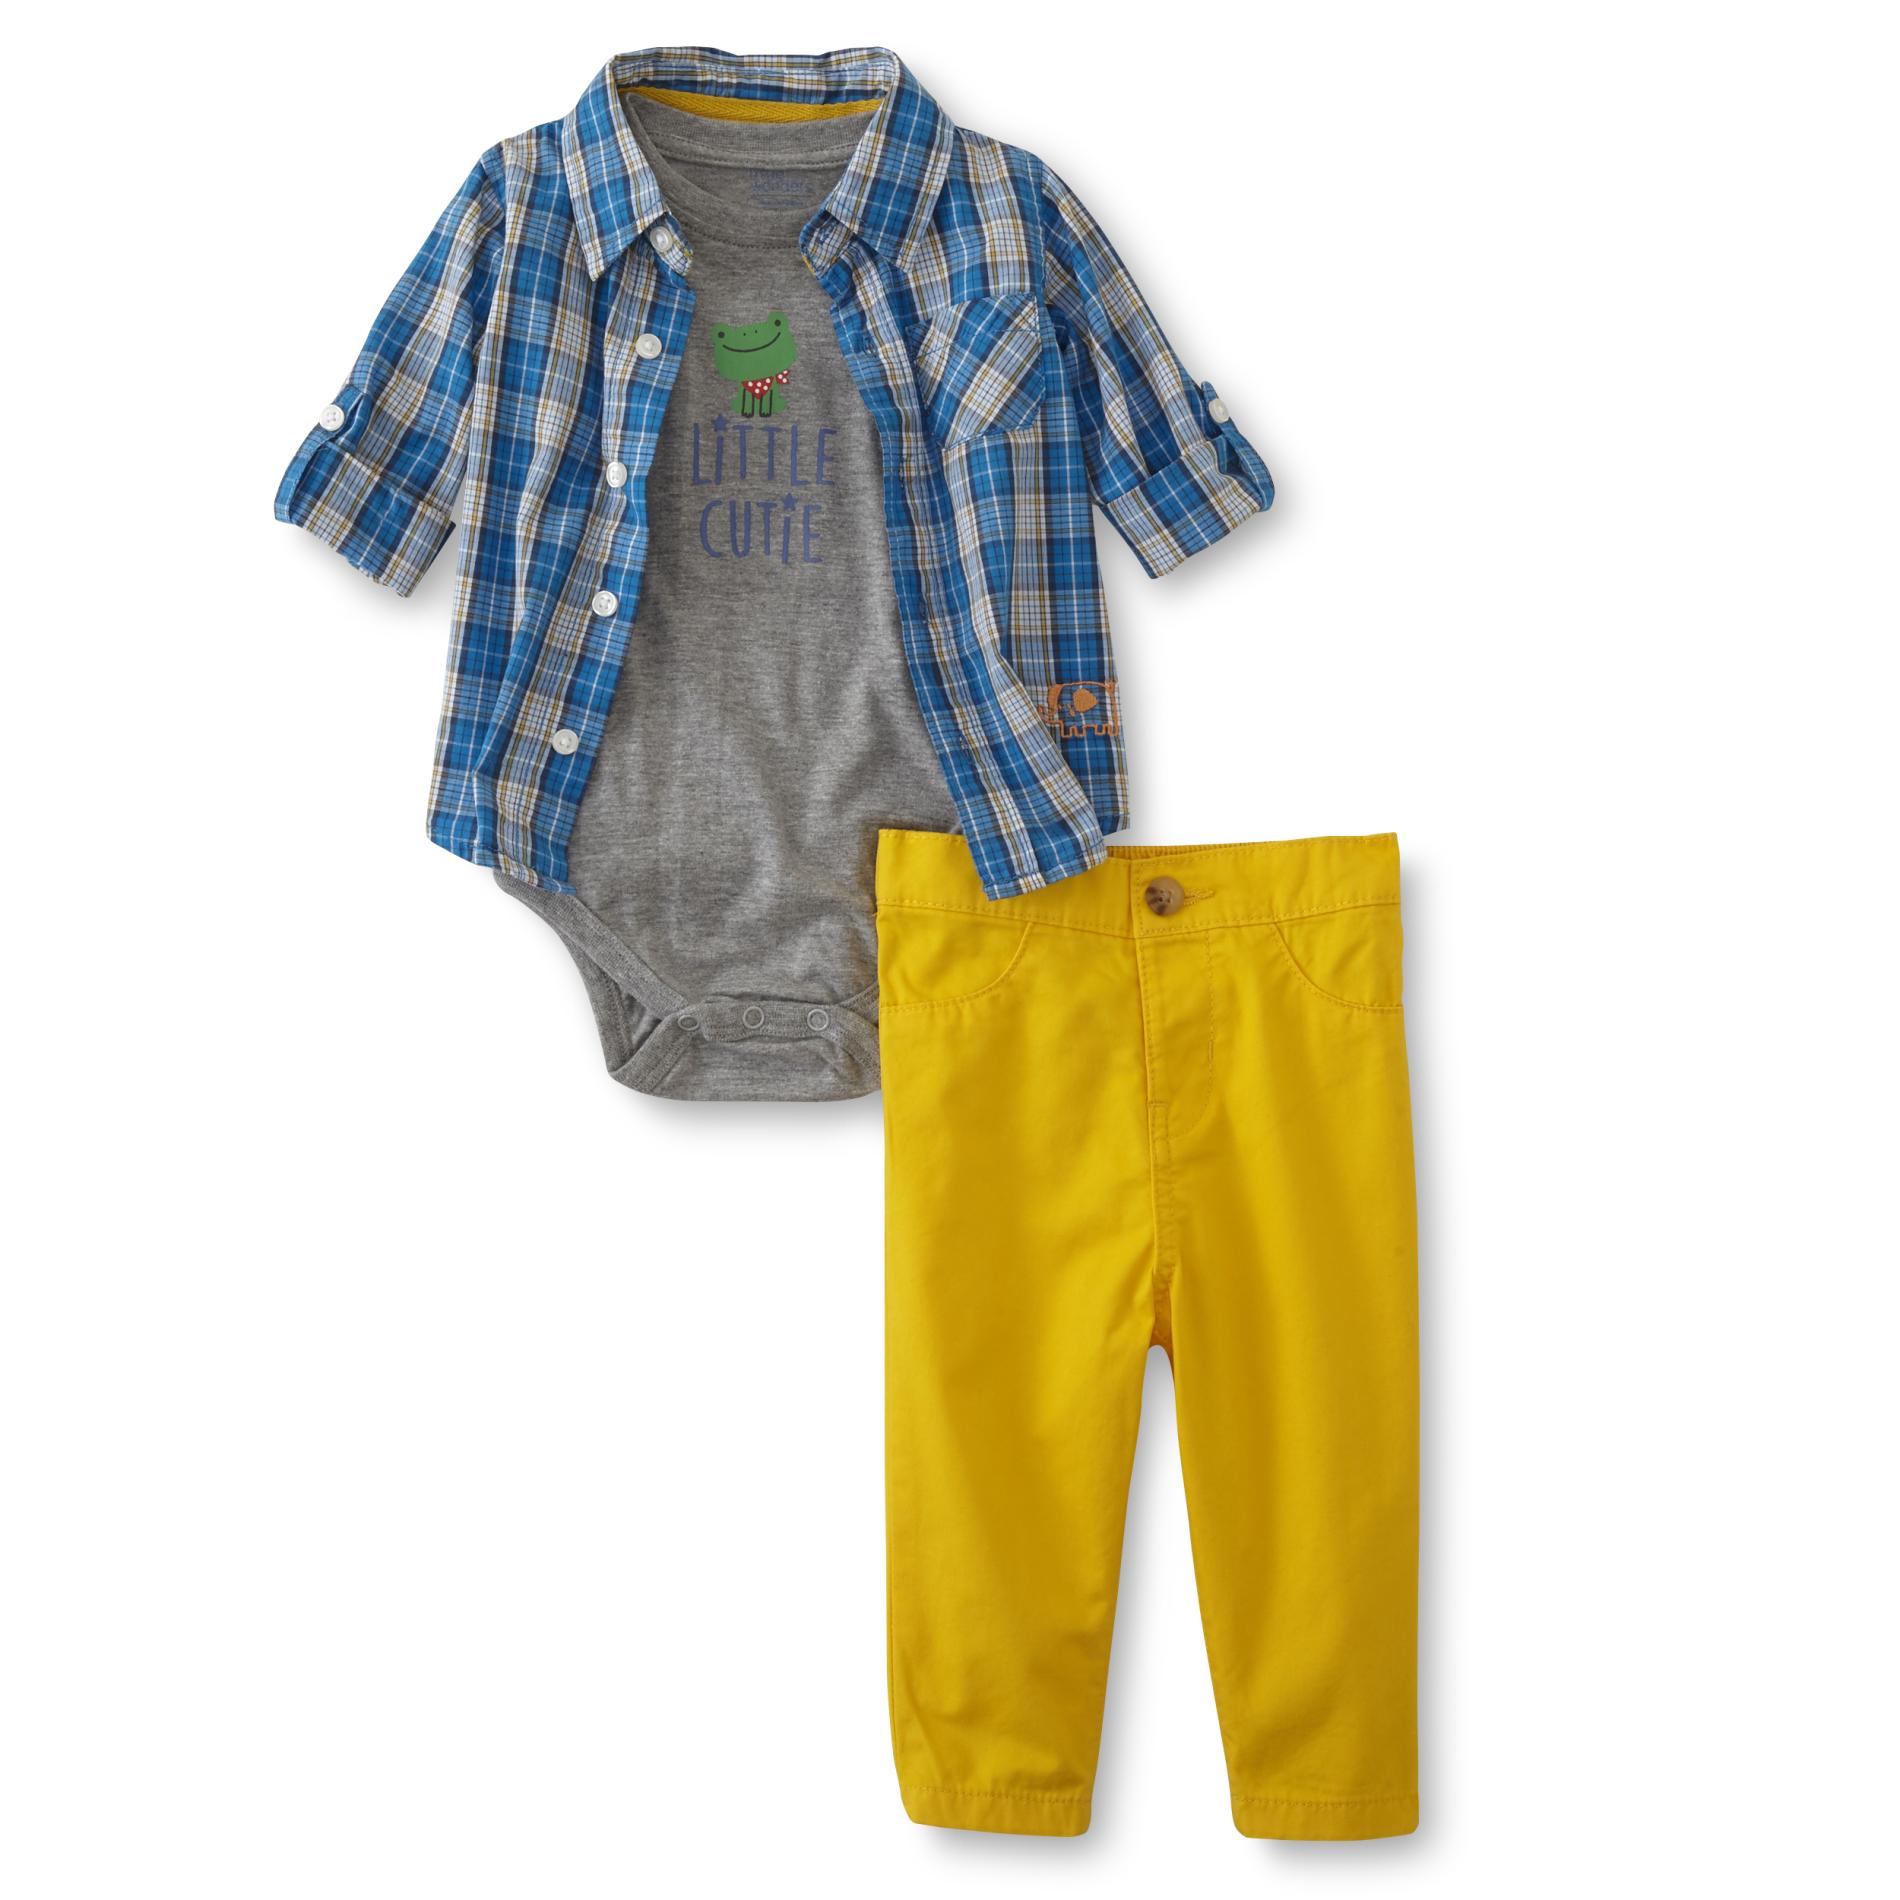 Little Wonders Infant Boys' Shirt, Bodysuit & Pants - Frog/Little Cutie